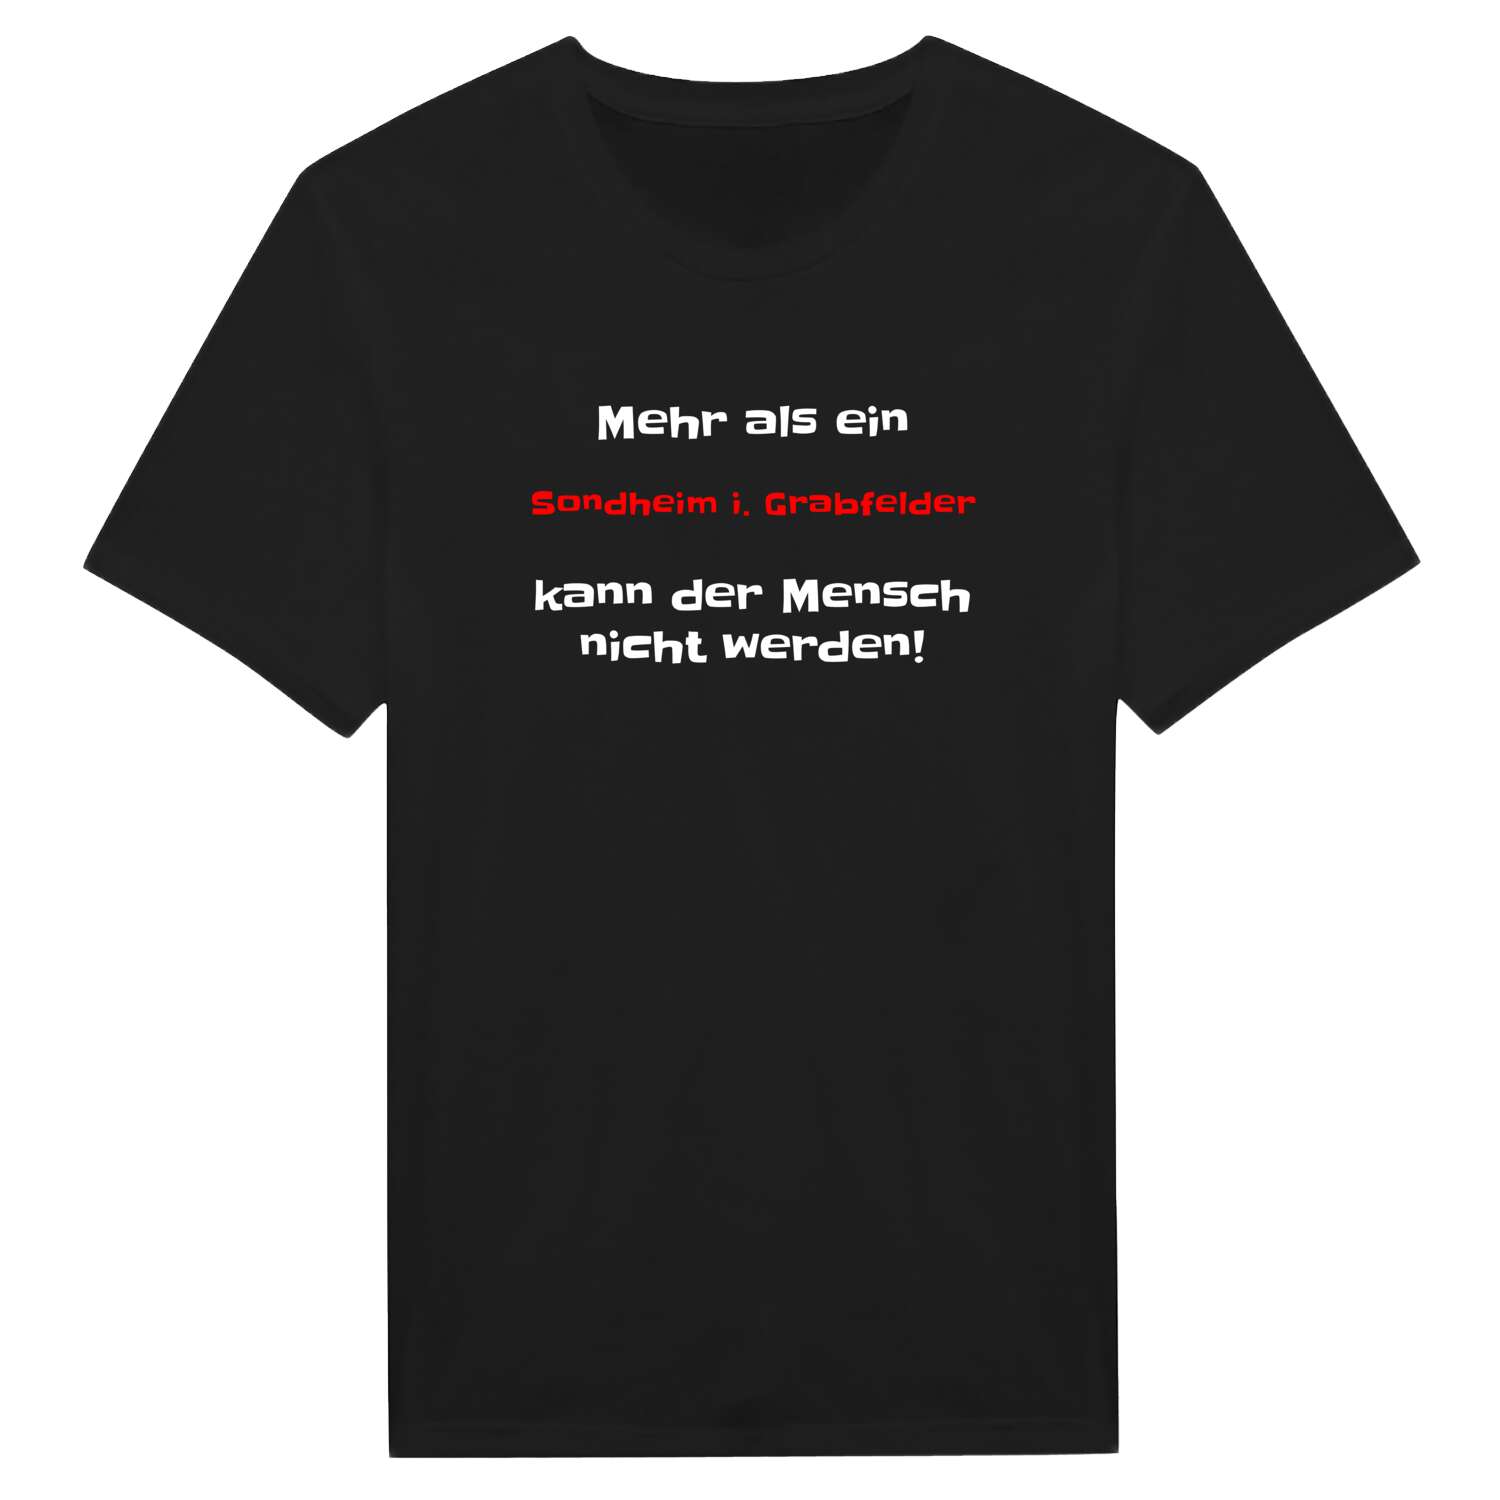 Sondheim i. Grabfeld T-Shirt »Mehr als ein«